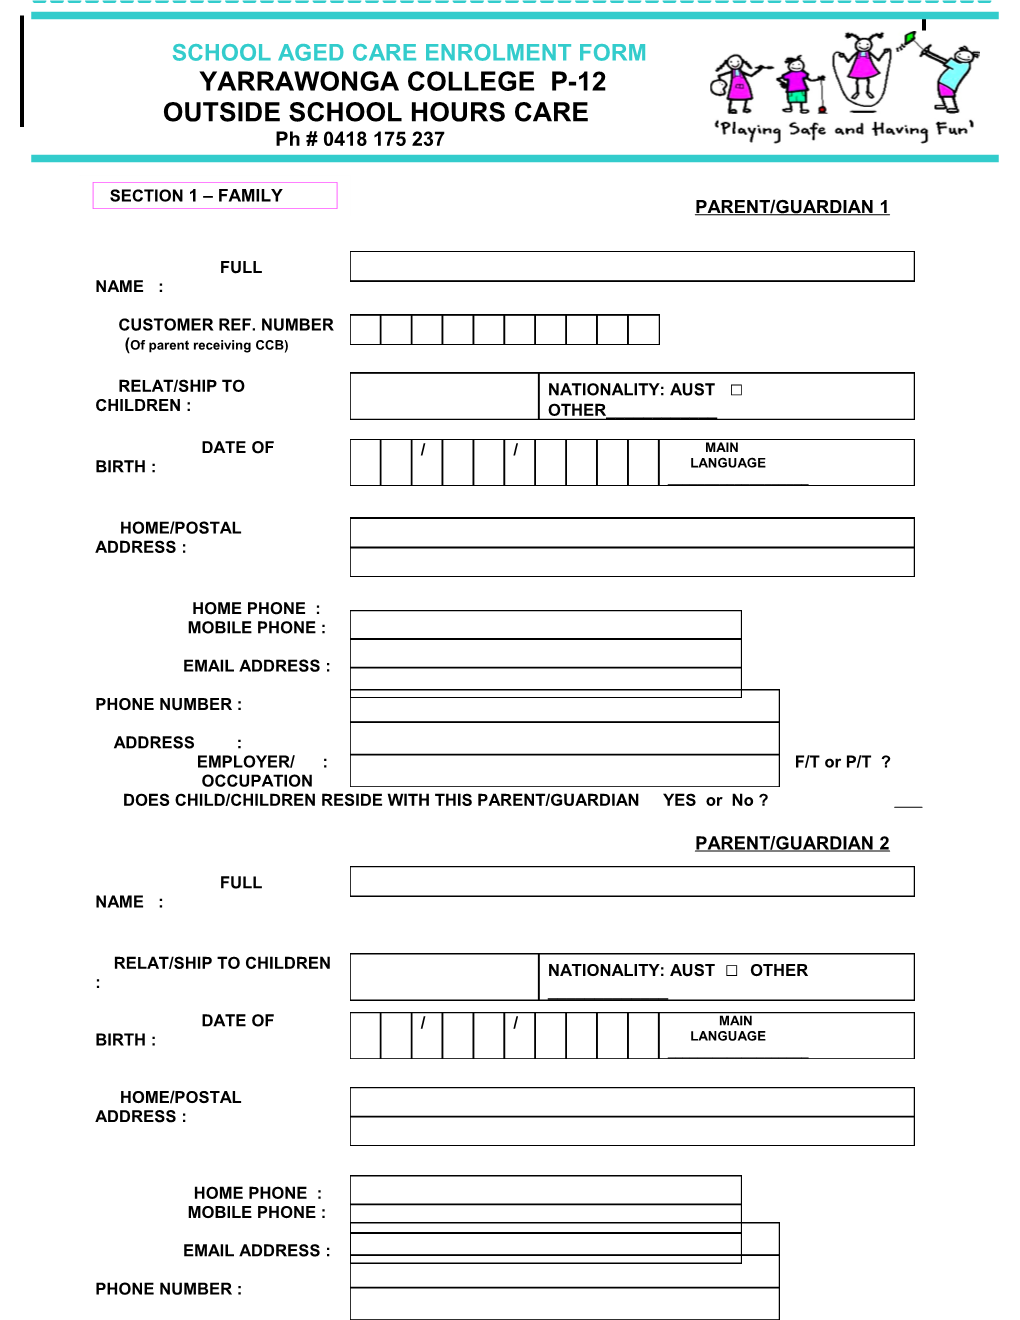 School Aged Care Enrolment Form